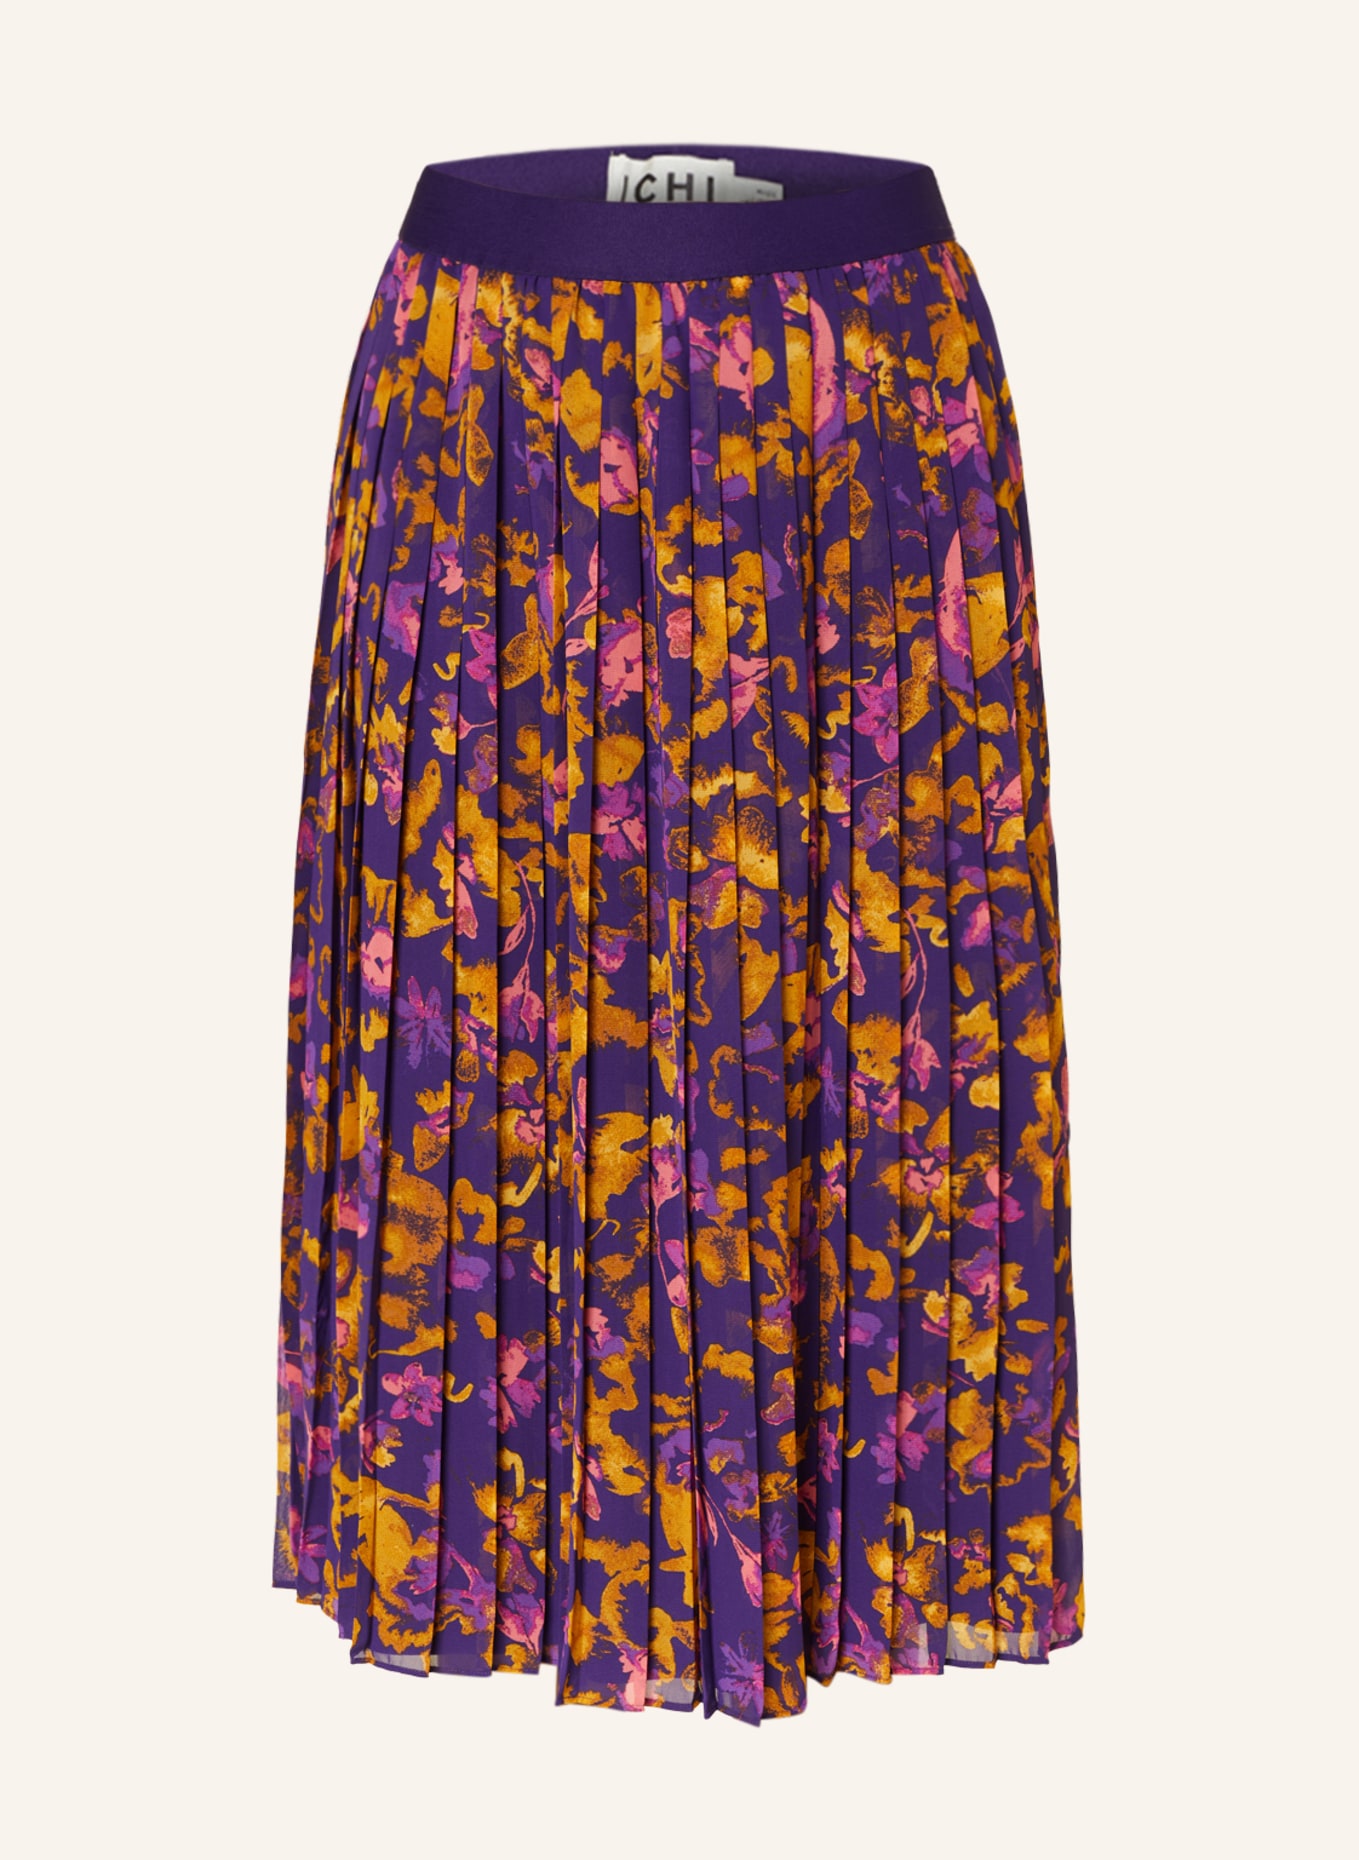 ICHI Plisseerock IHILLY, Farbe: 202168 purple multi flower AOP (Bild 1)